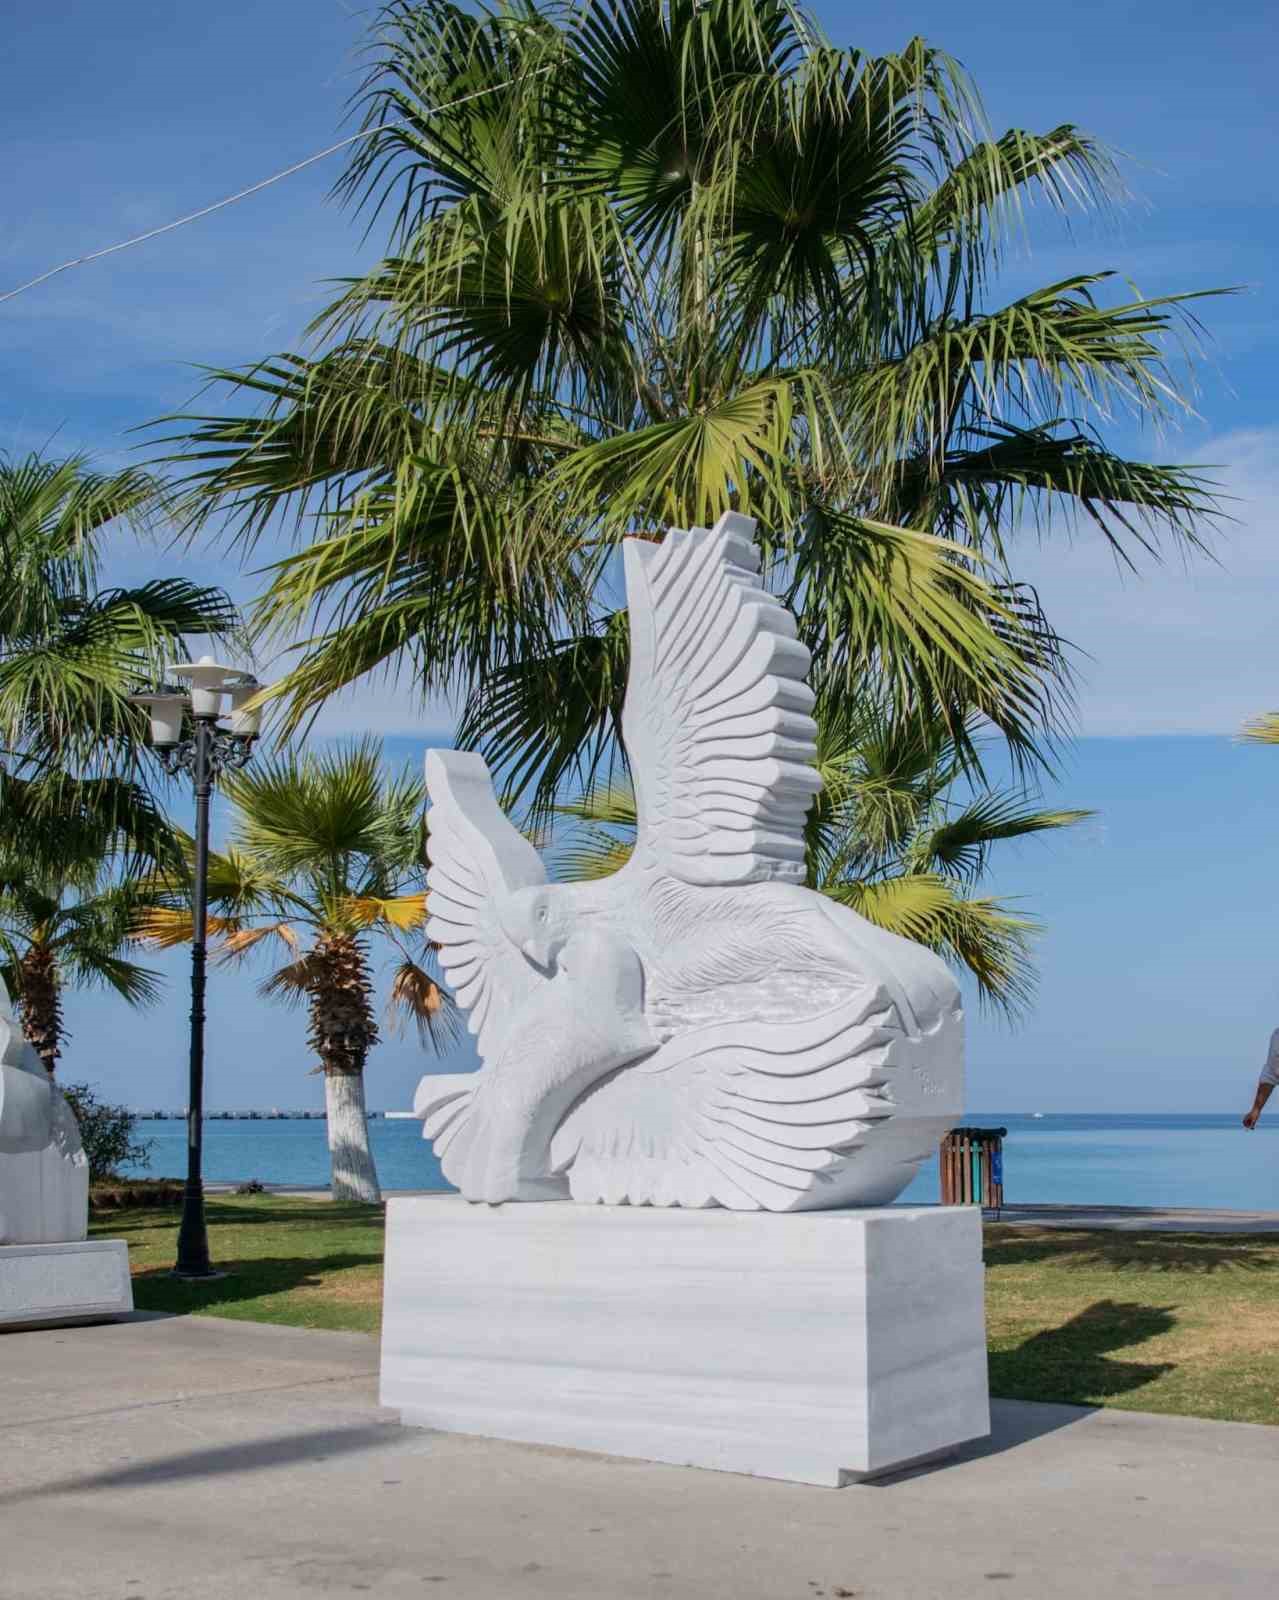 Kuşadası Heykel Sempozyumu eserleri sahilde sergileniyor